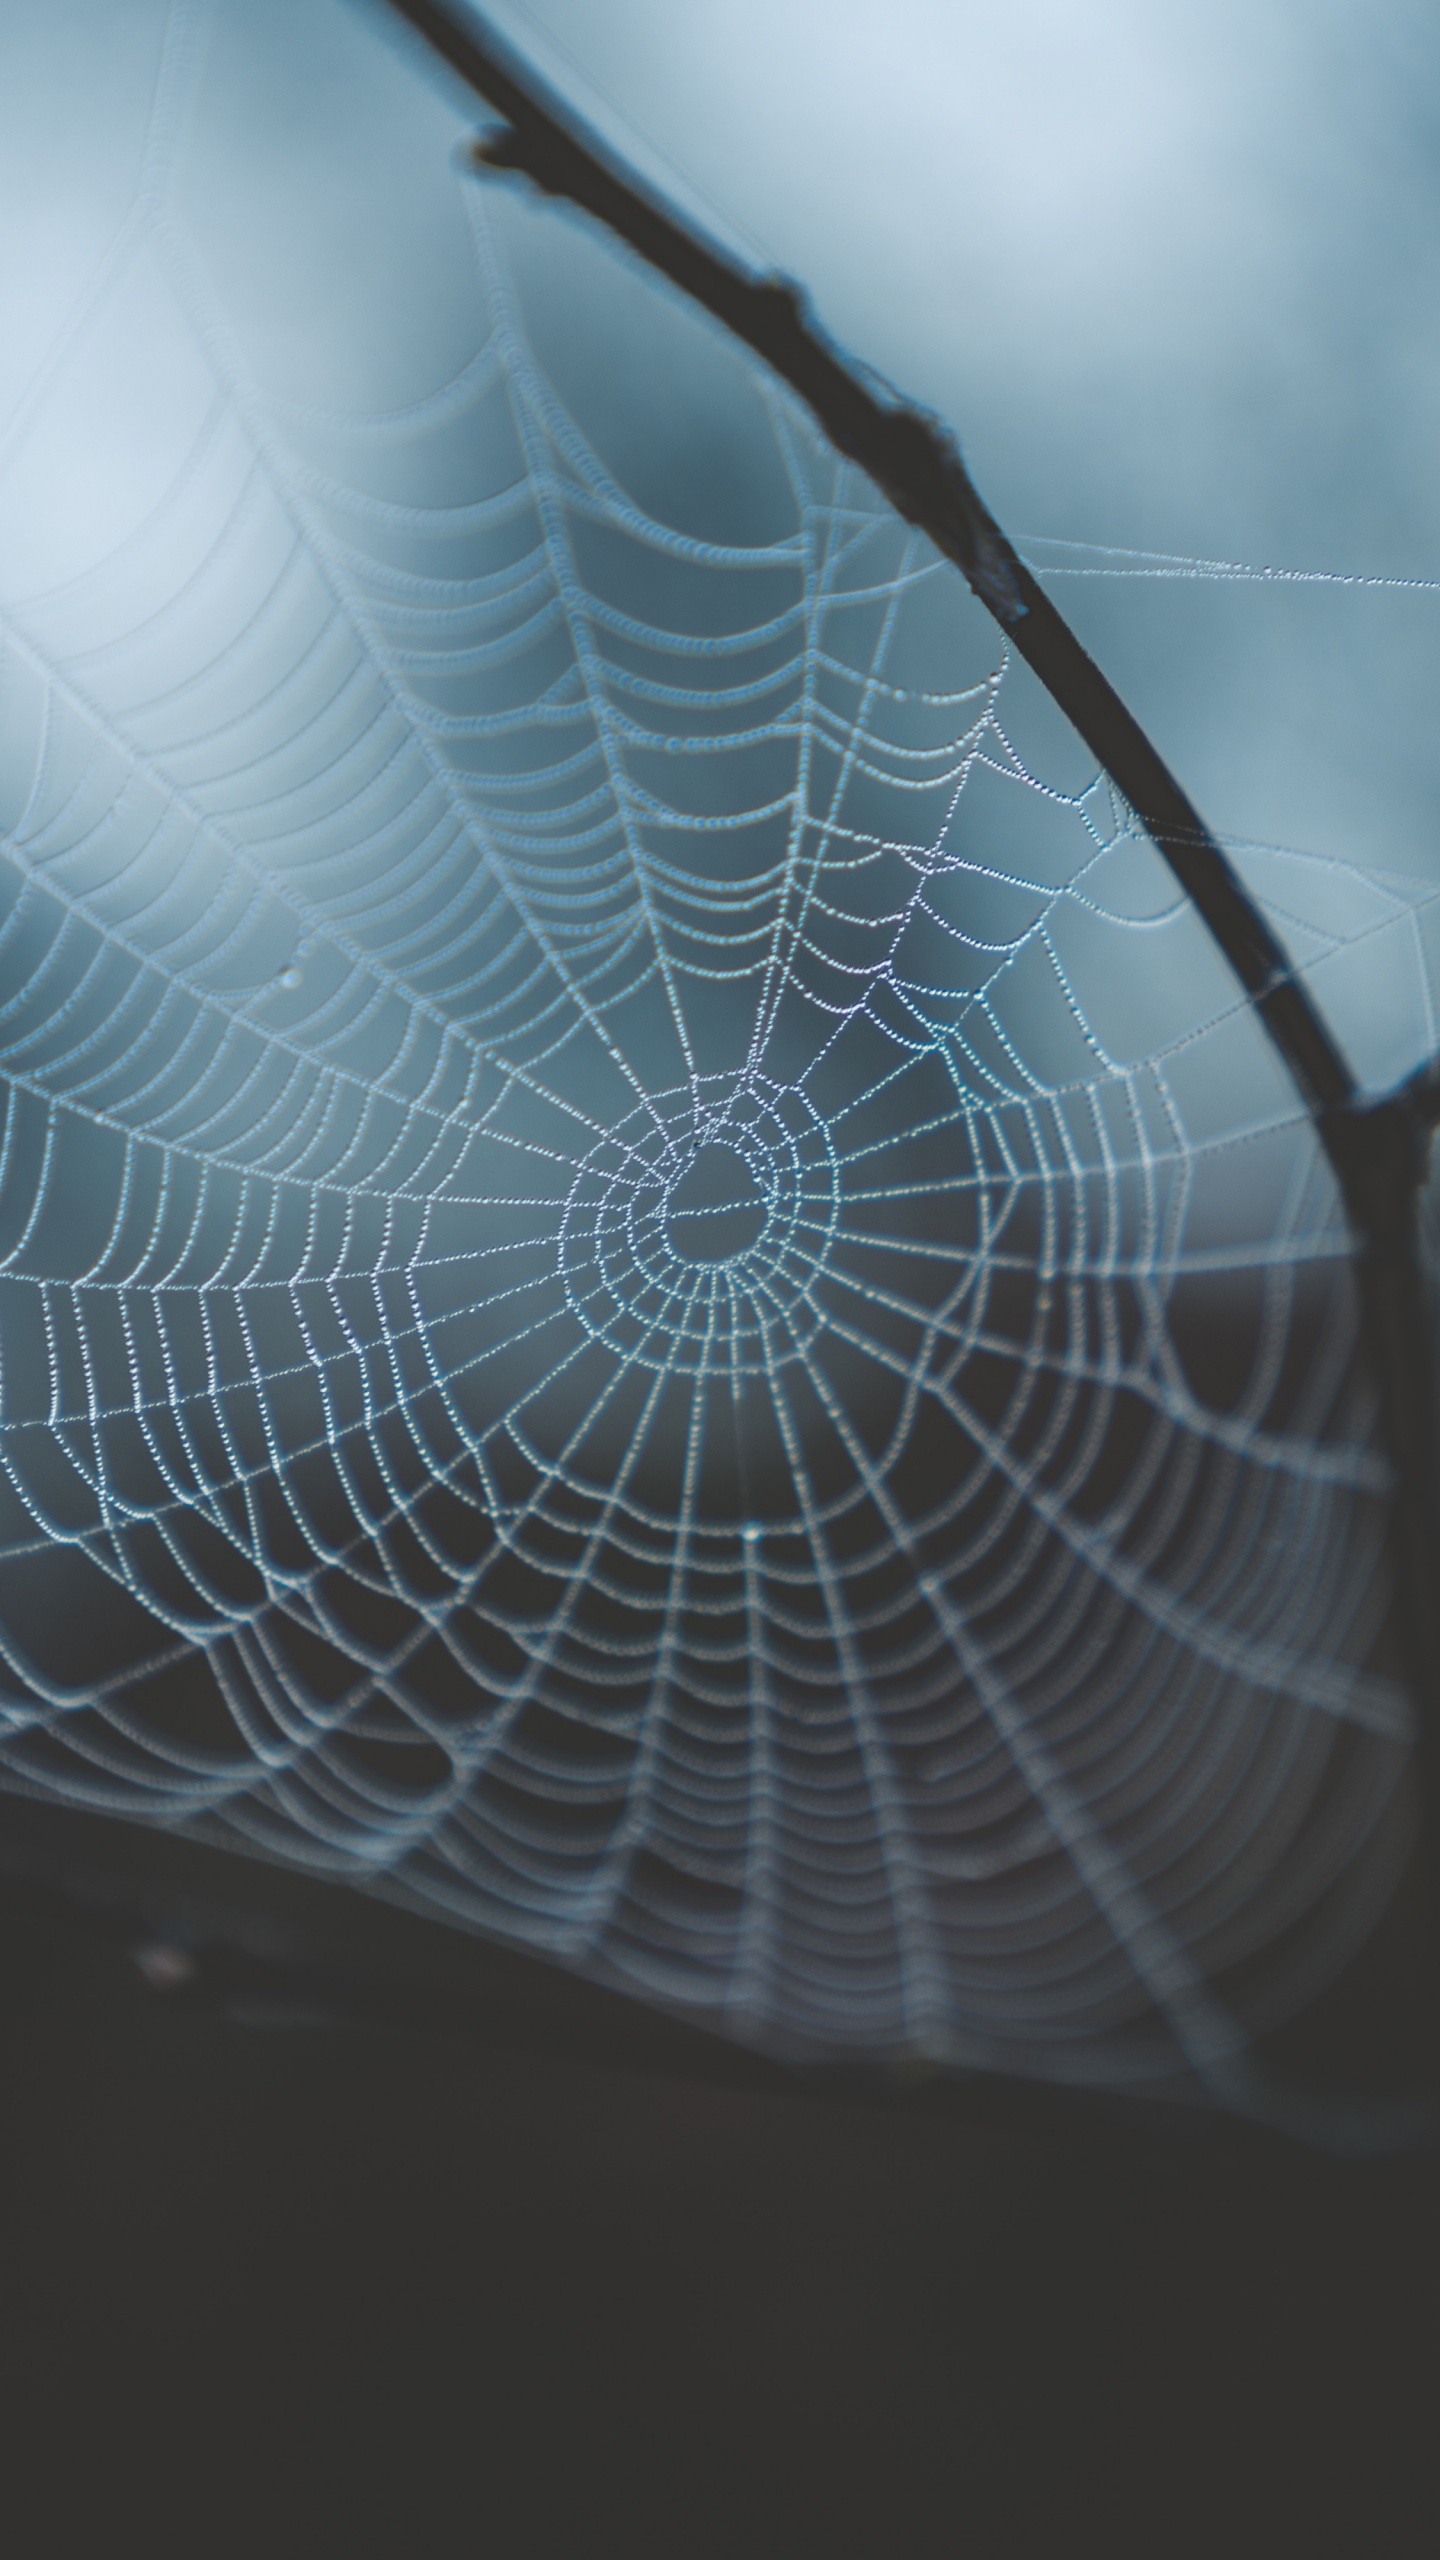 蜘蛛网, 早上, 光, 透明材料, 天空 壁纸 1440x2560 允许